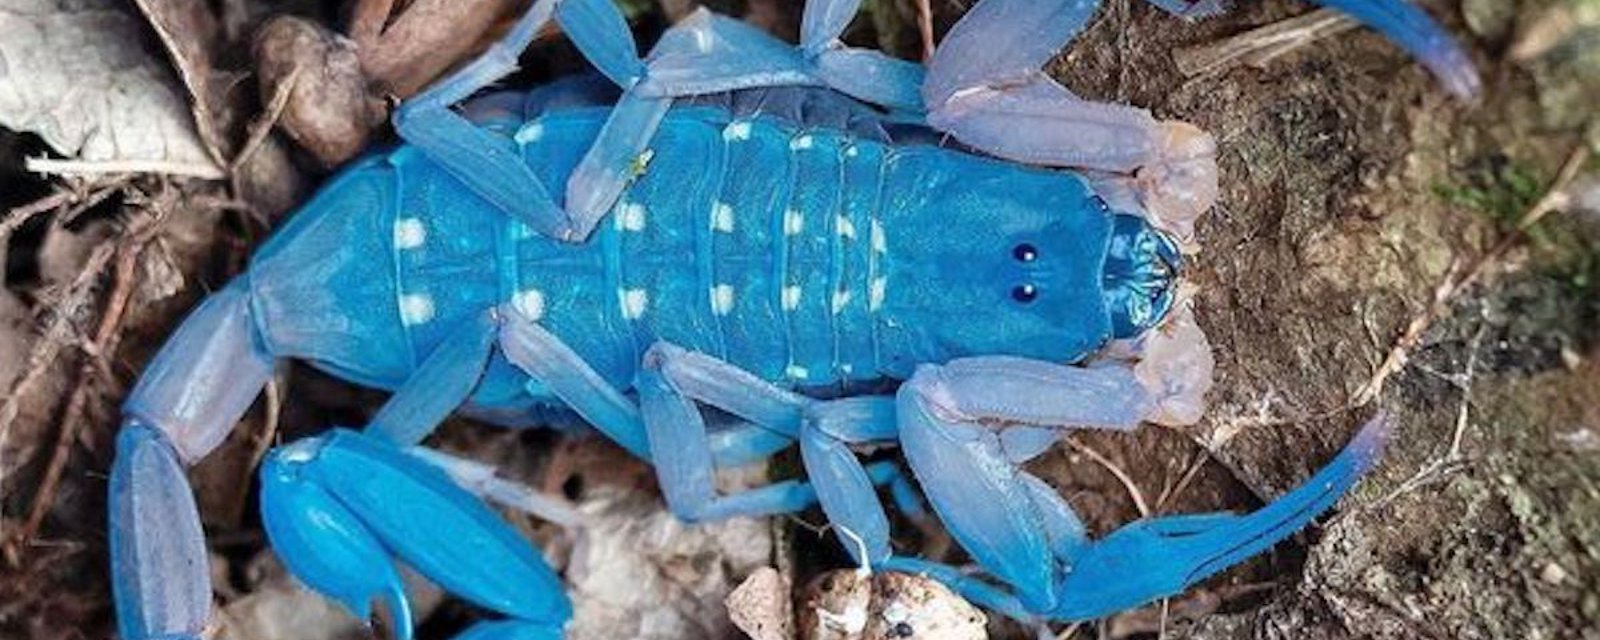 Le Scorpion bleu: une autre surprise de la nature